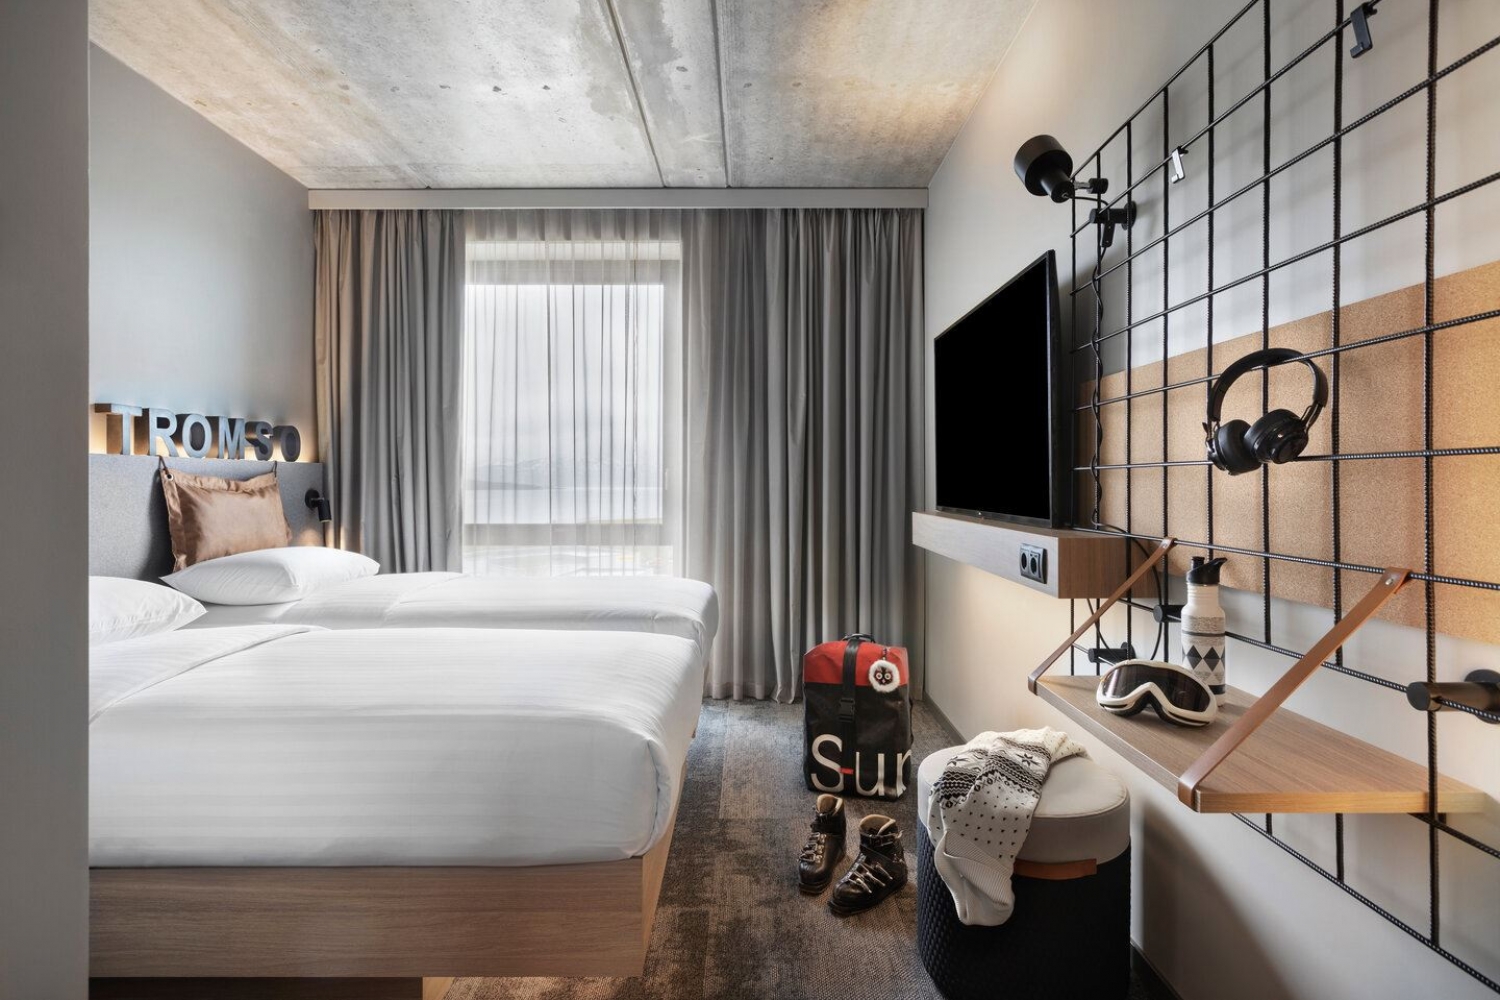 Hotellrom i minimalistisk stil, dobbeltseng, tv og hylleseksjon.